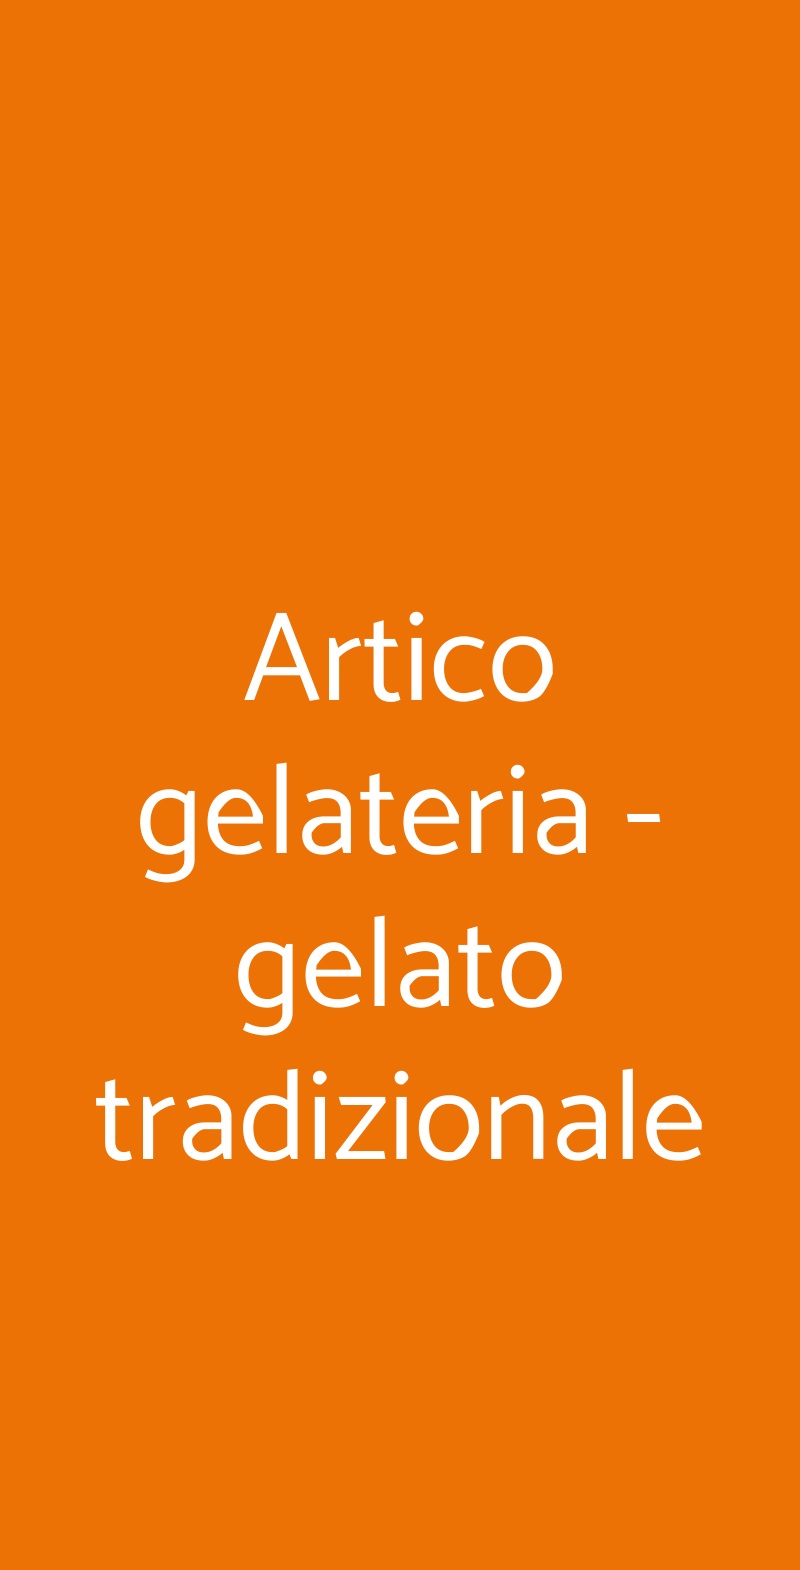 Artico gelateria - gelato tradizionale Milano menù 1 pagina